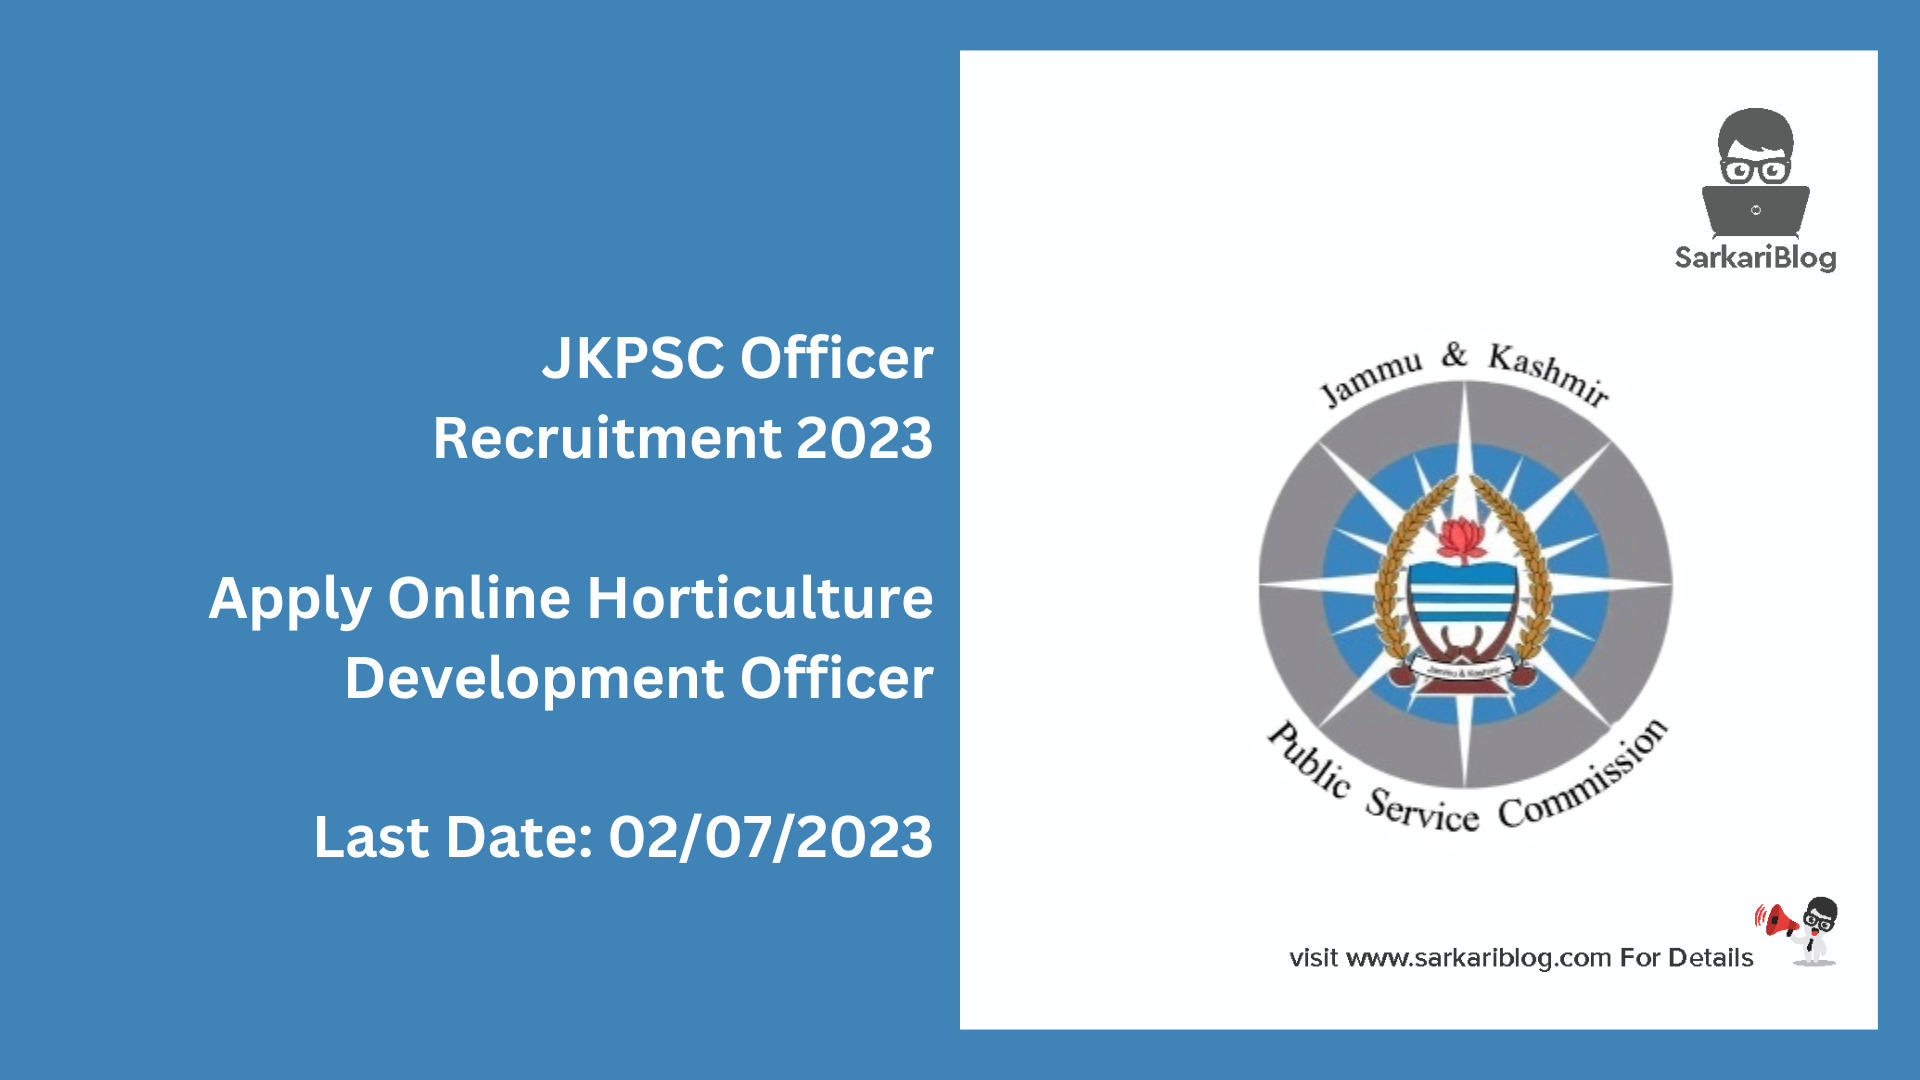 JKPSC Officer Recruitment 2023